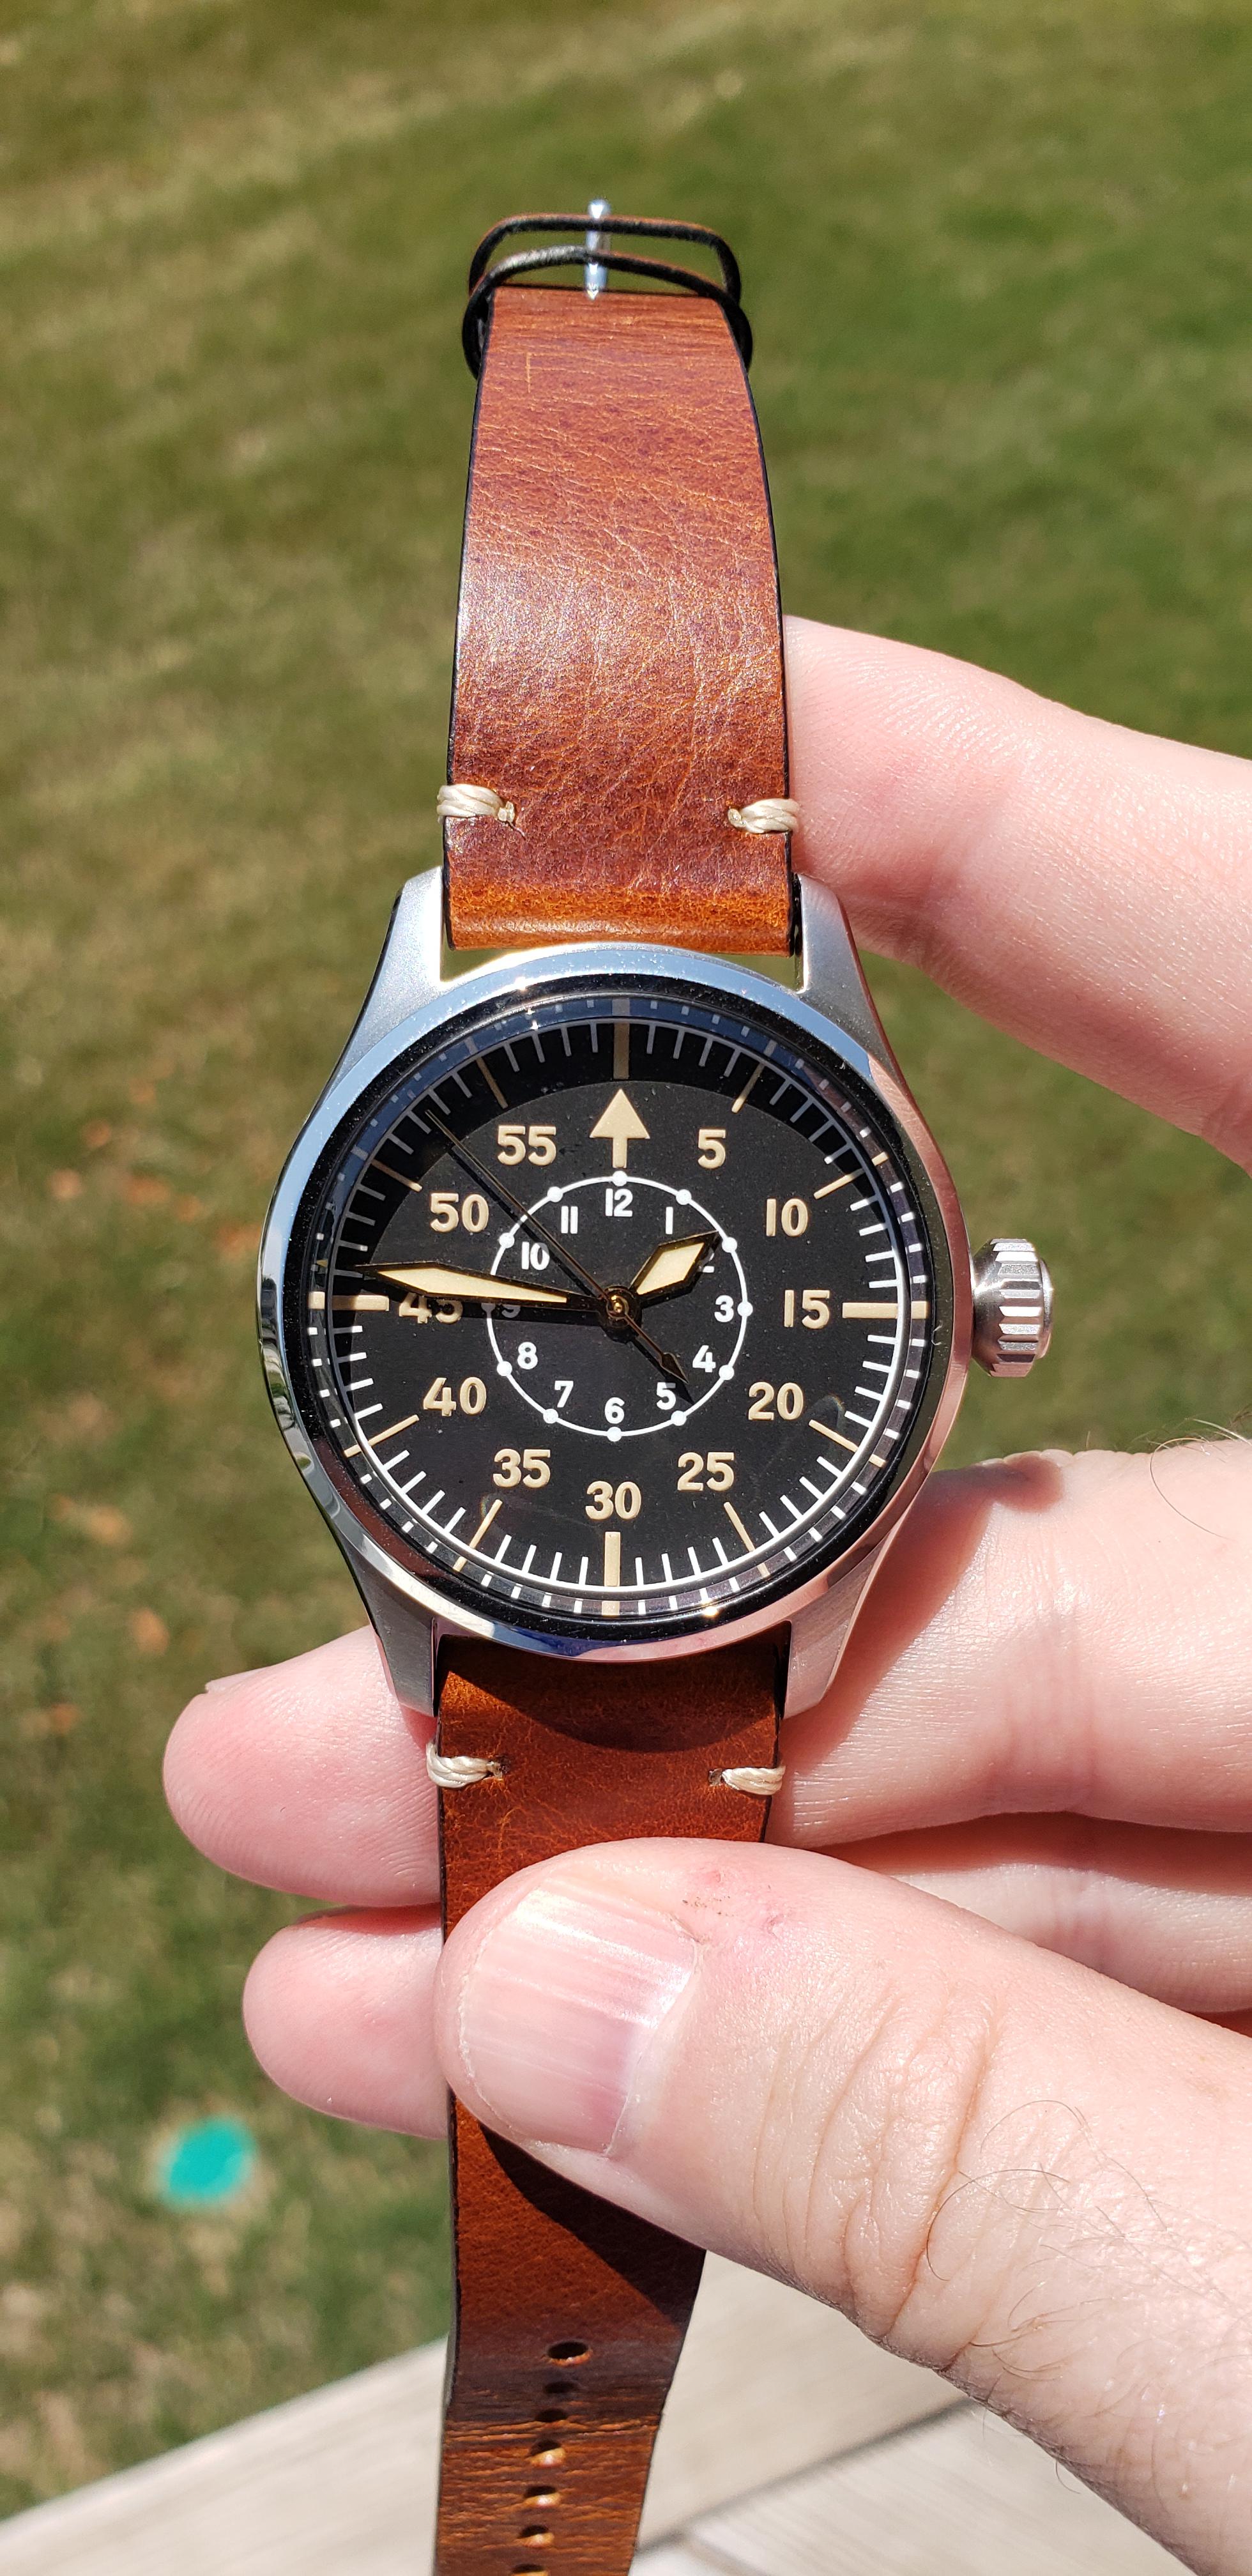 WTS] Geckota K-01 Flieger Pilot's Watch | WatchCharts